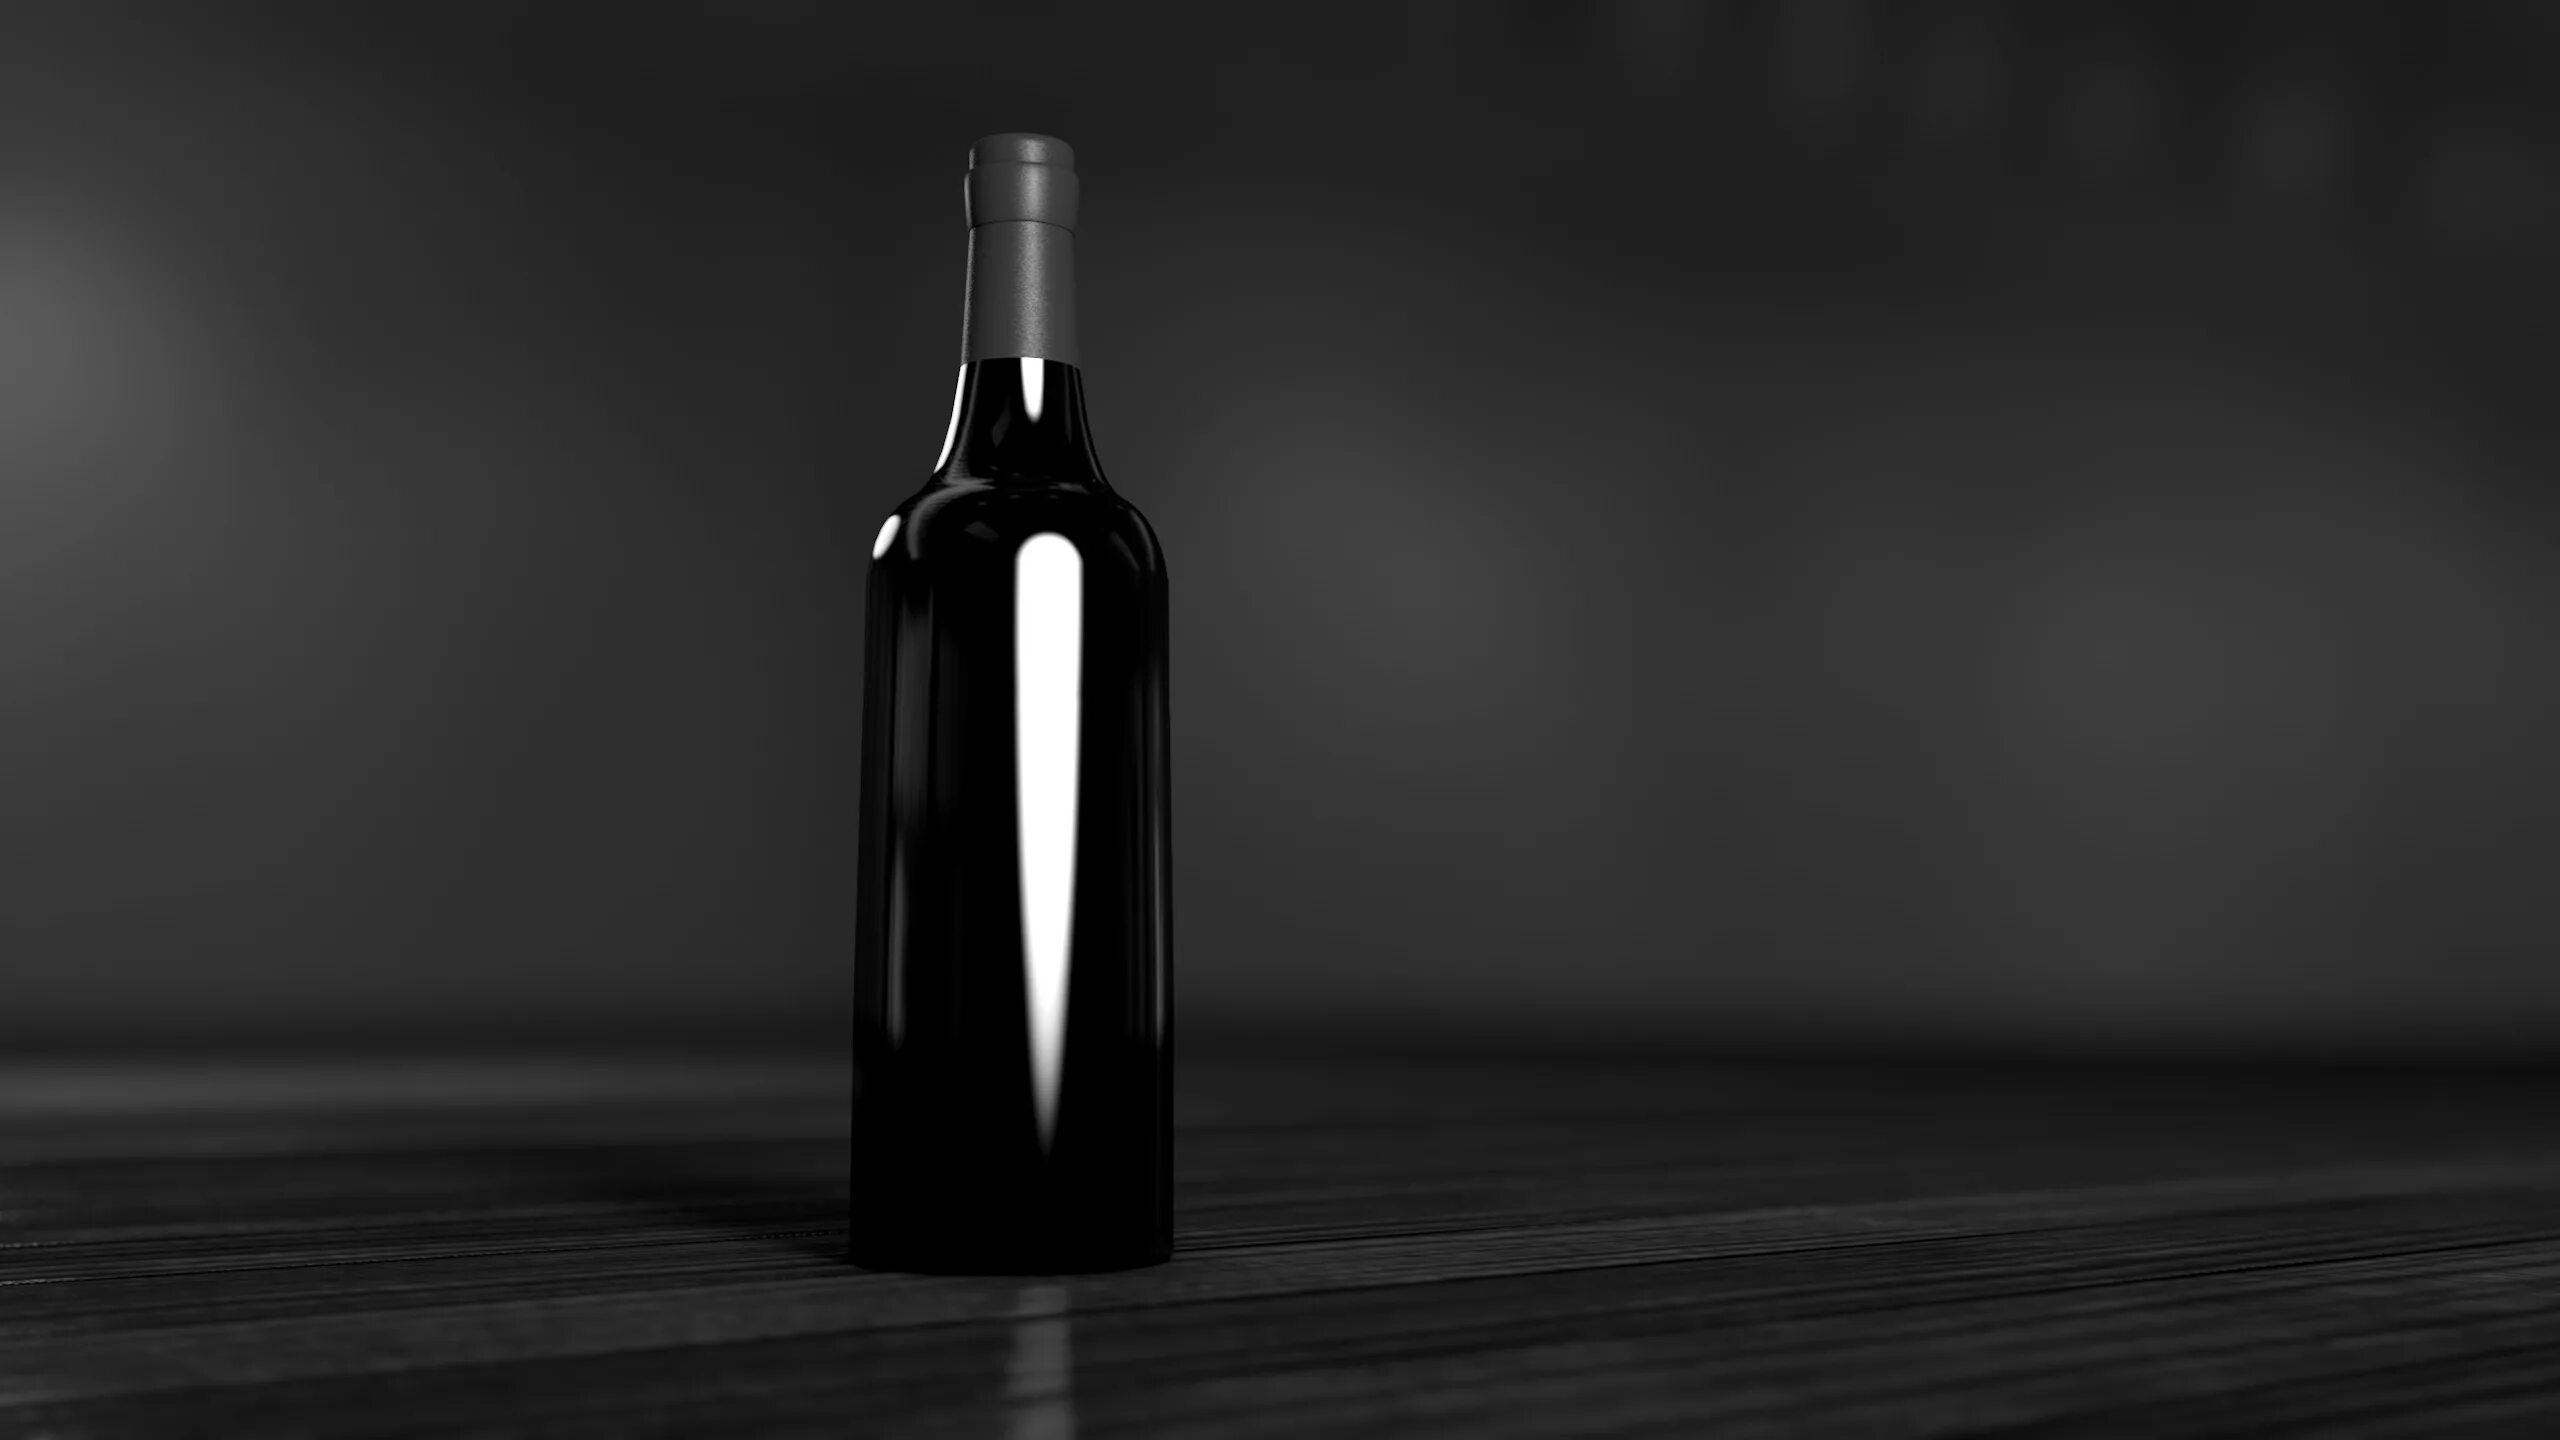 Темные бутылочки. Темный стол фон. Бутылка вина на столе. Бутылка на черном фоне. Предмет на темном фоне.